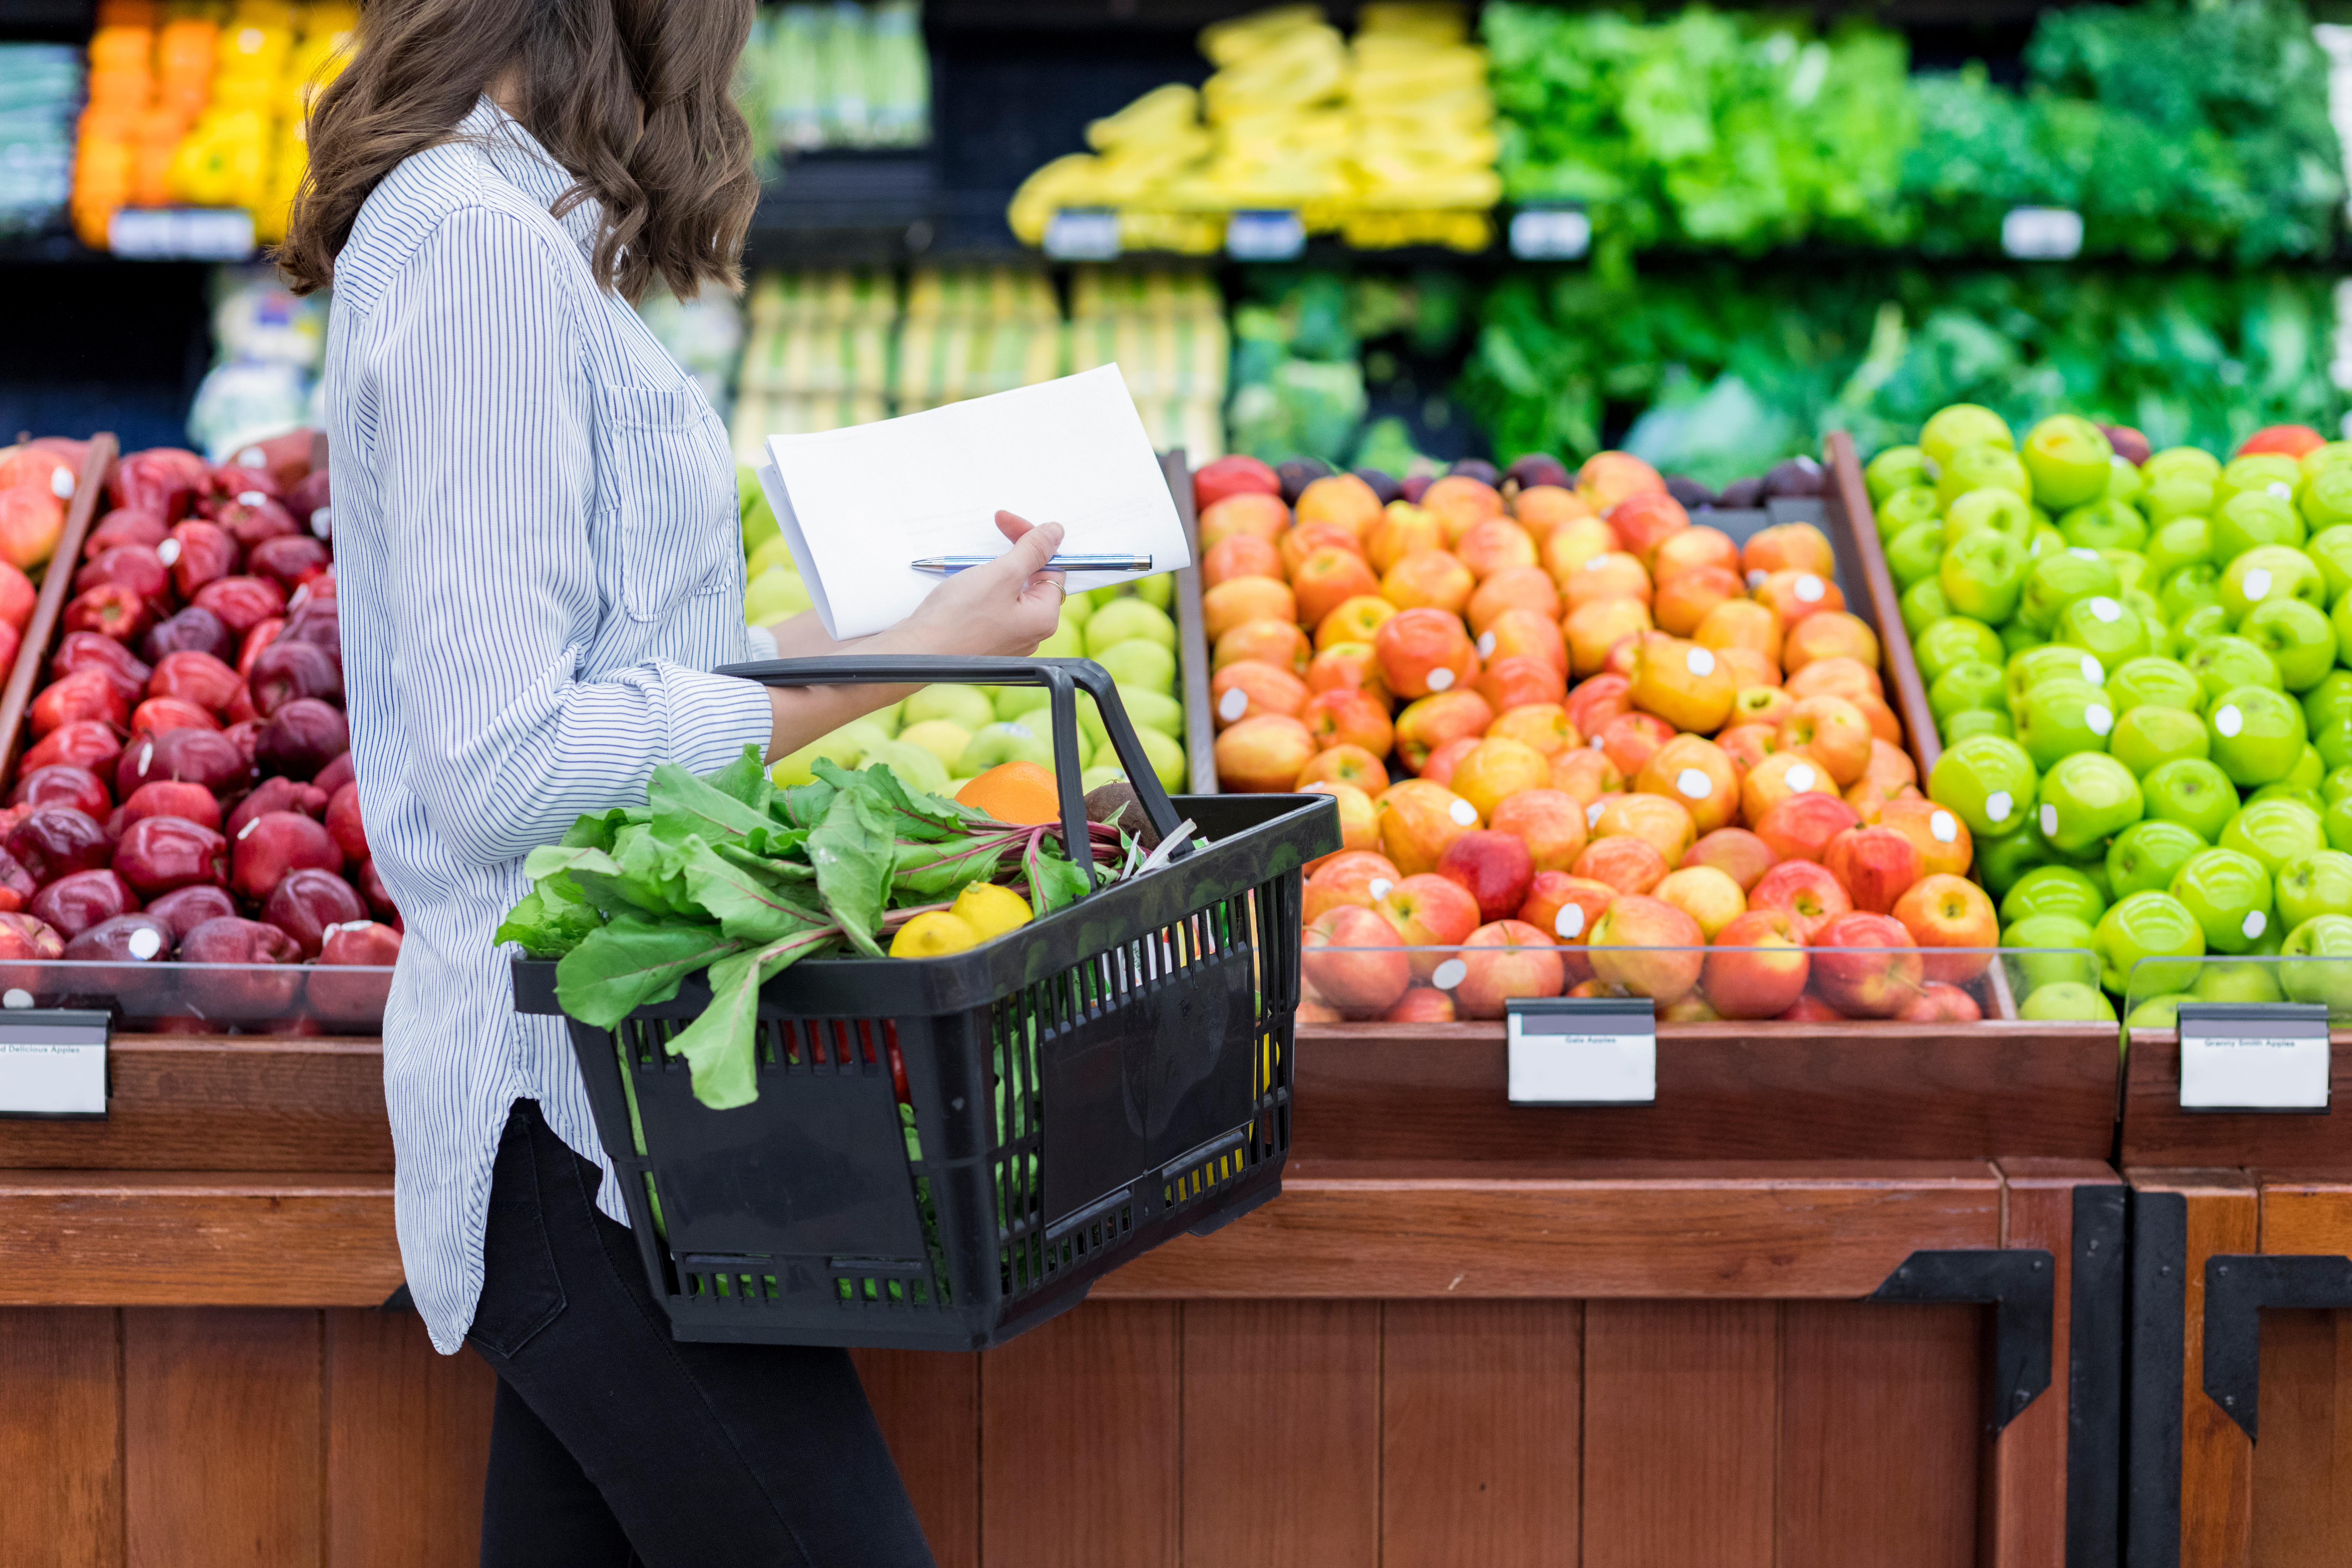 年轻女性携带一个装满新鲜农产品的购物篮。她在一家杂货店里买新鲜水果和蔬菜。